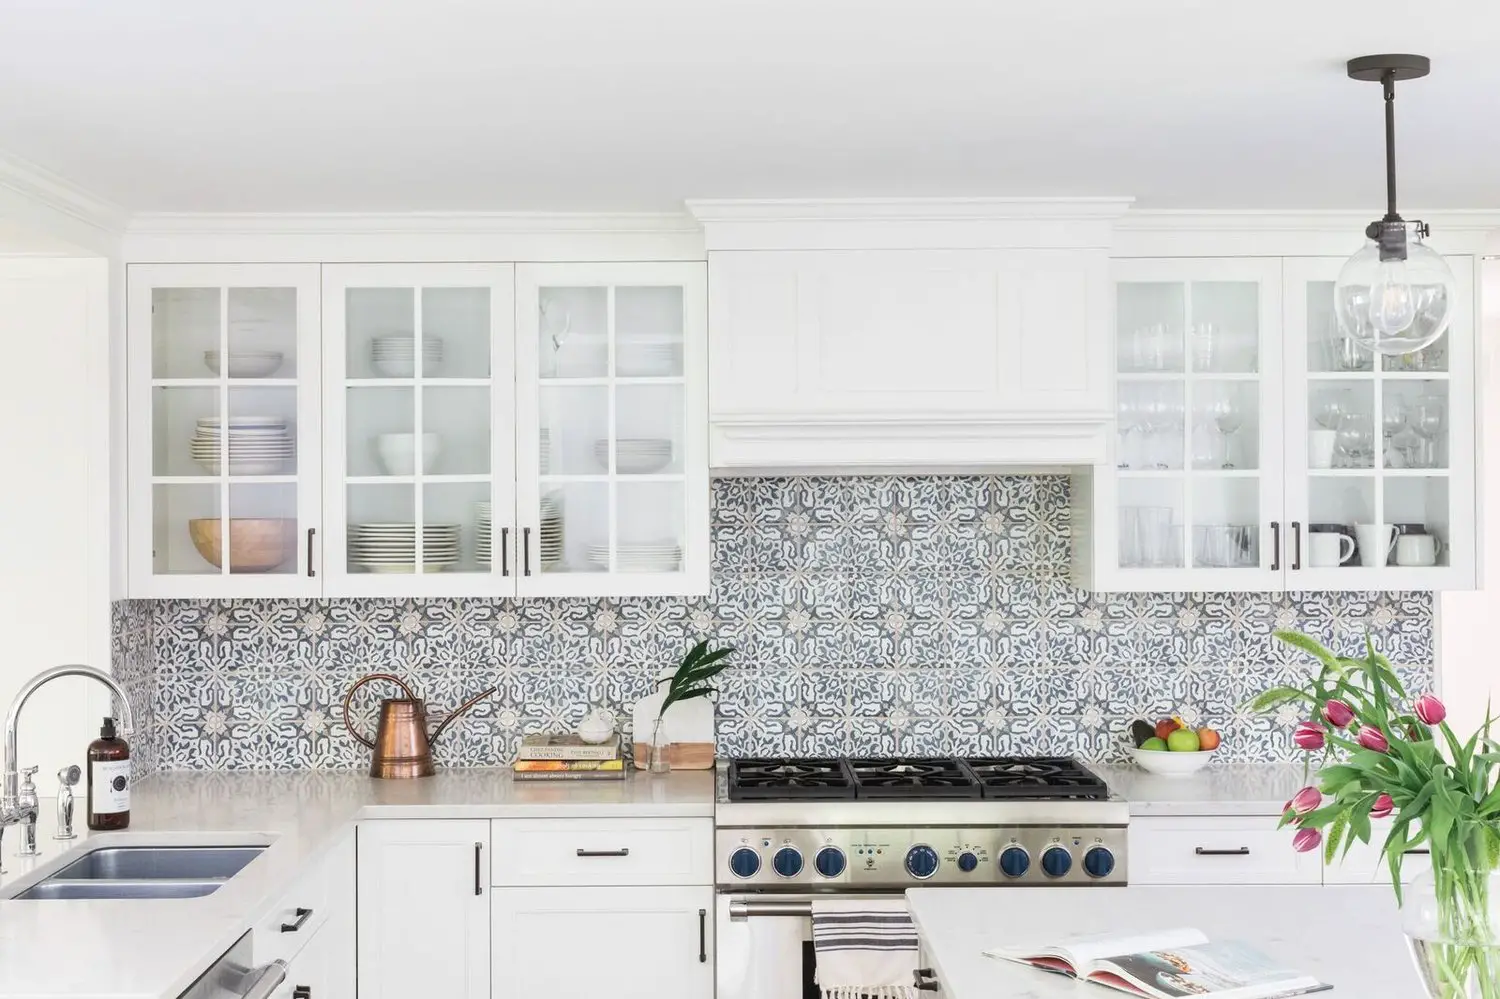 white kitchen backsplash with patterned tile